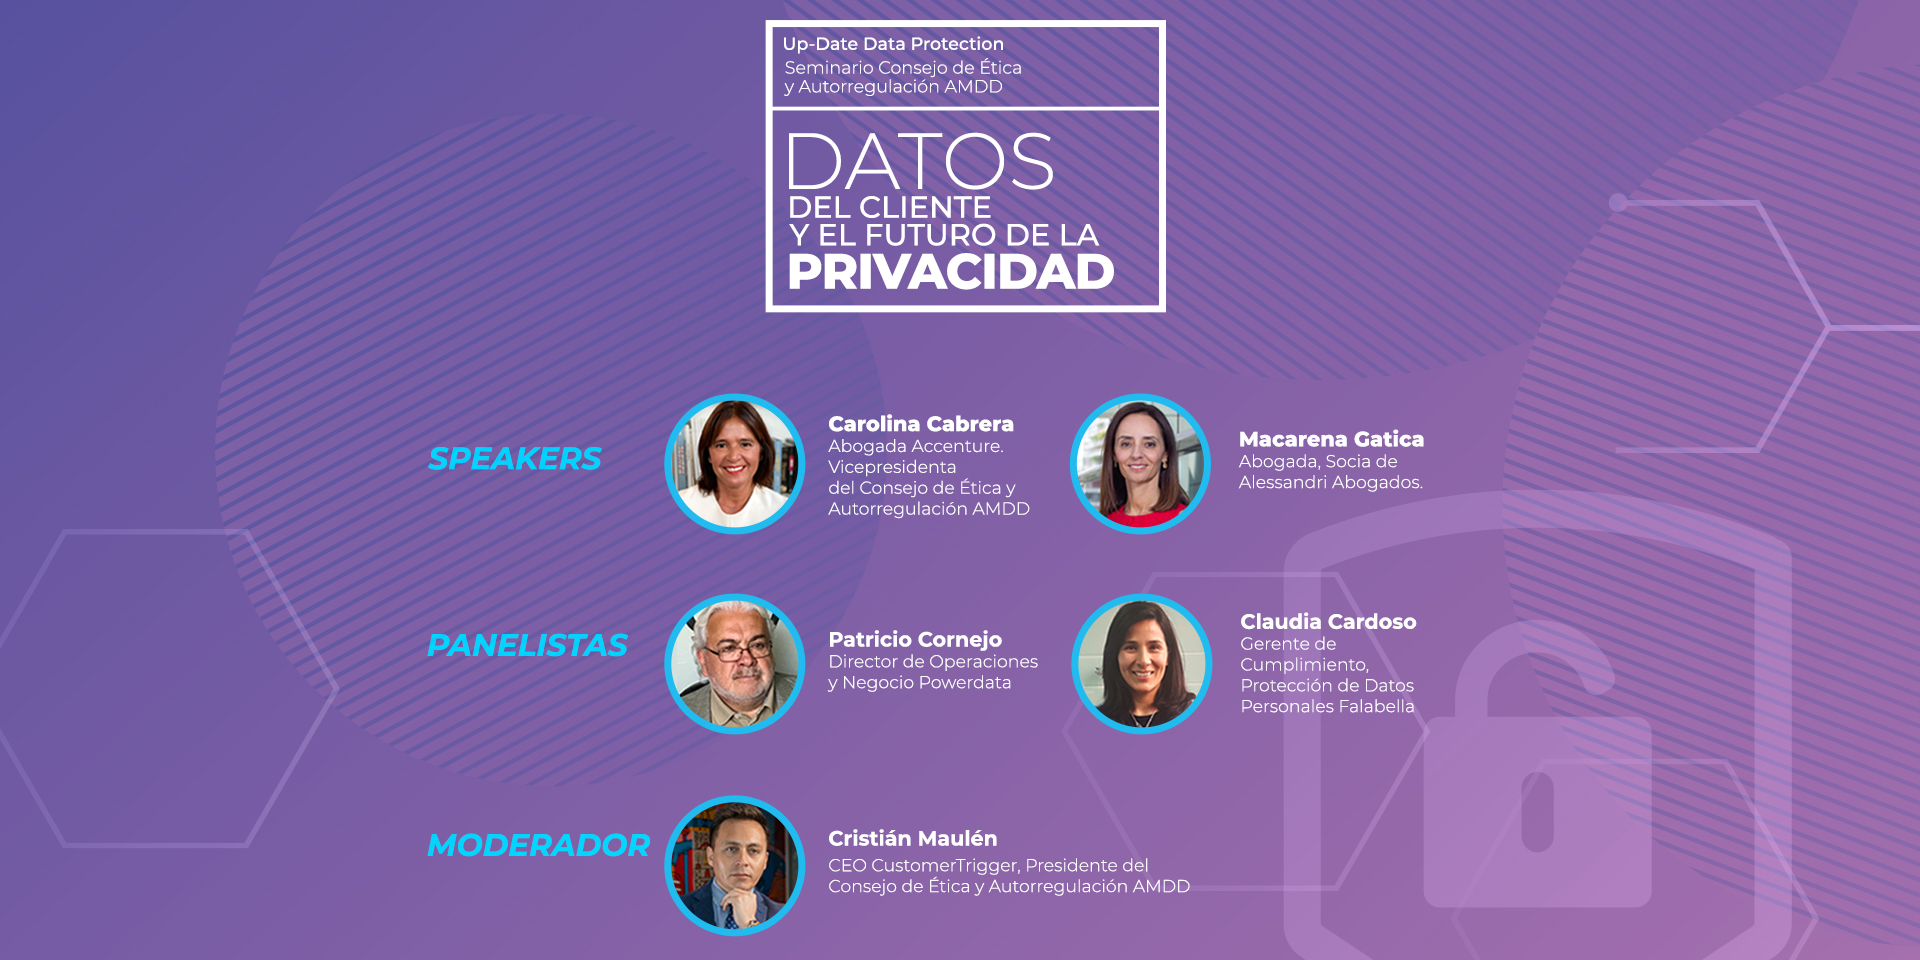 Up-Date Data Protection | Seminario Consejo de Ética y Autorregulación AMDD “Datos del cliente y el futuro de la privacidad”